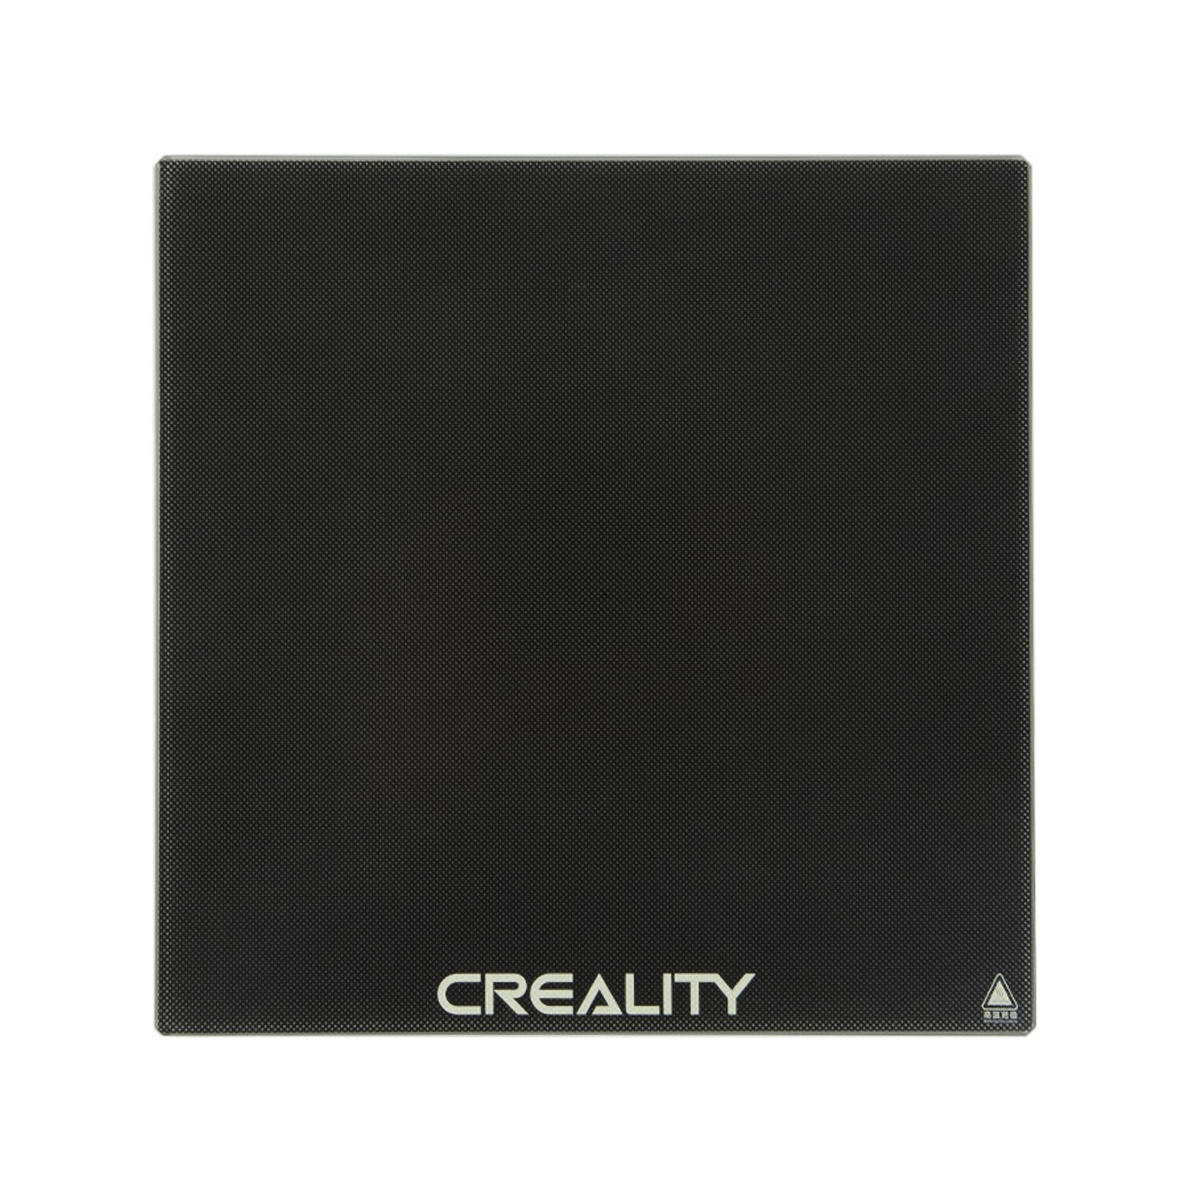 Стекло Creality Ultrabase для 3D принтера Ender 3, Ender 3 Pro (Оригинал)